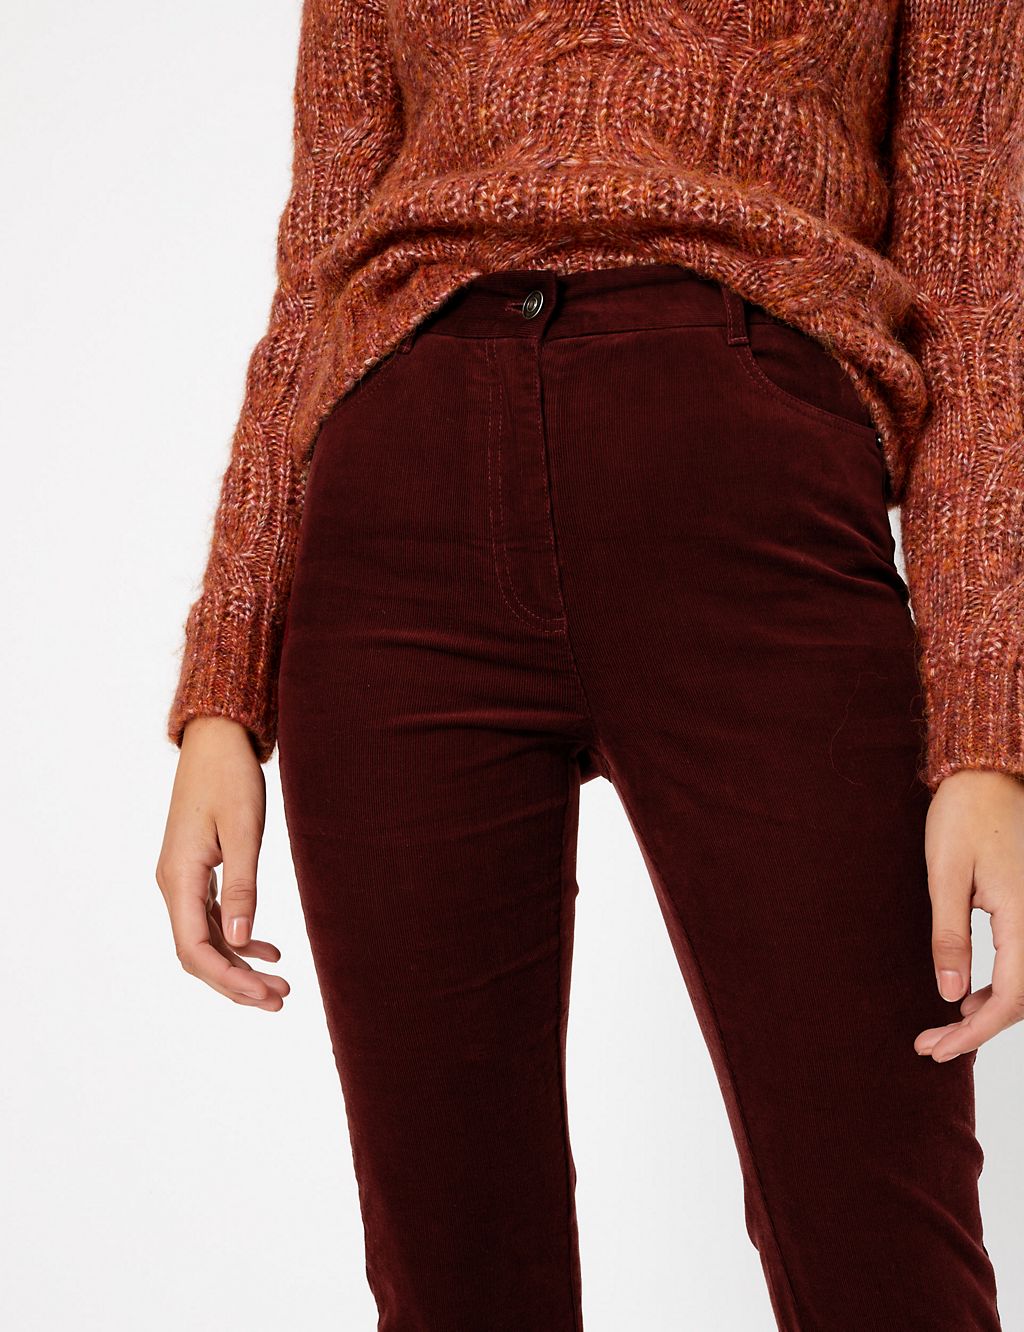 Corduroy Slim Flare Trousers | Per Una | M&S